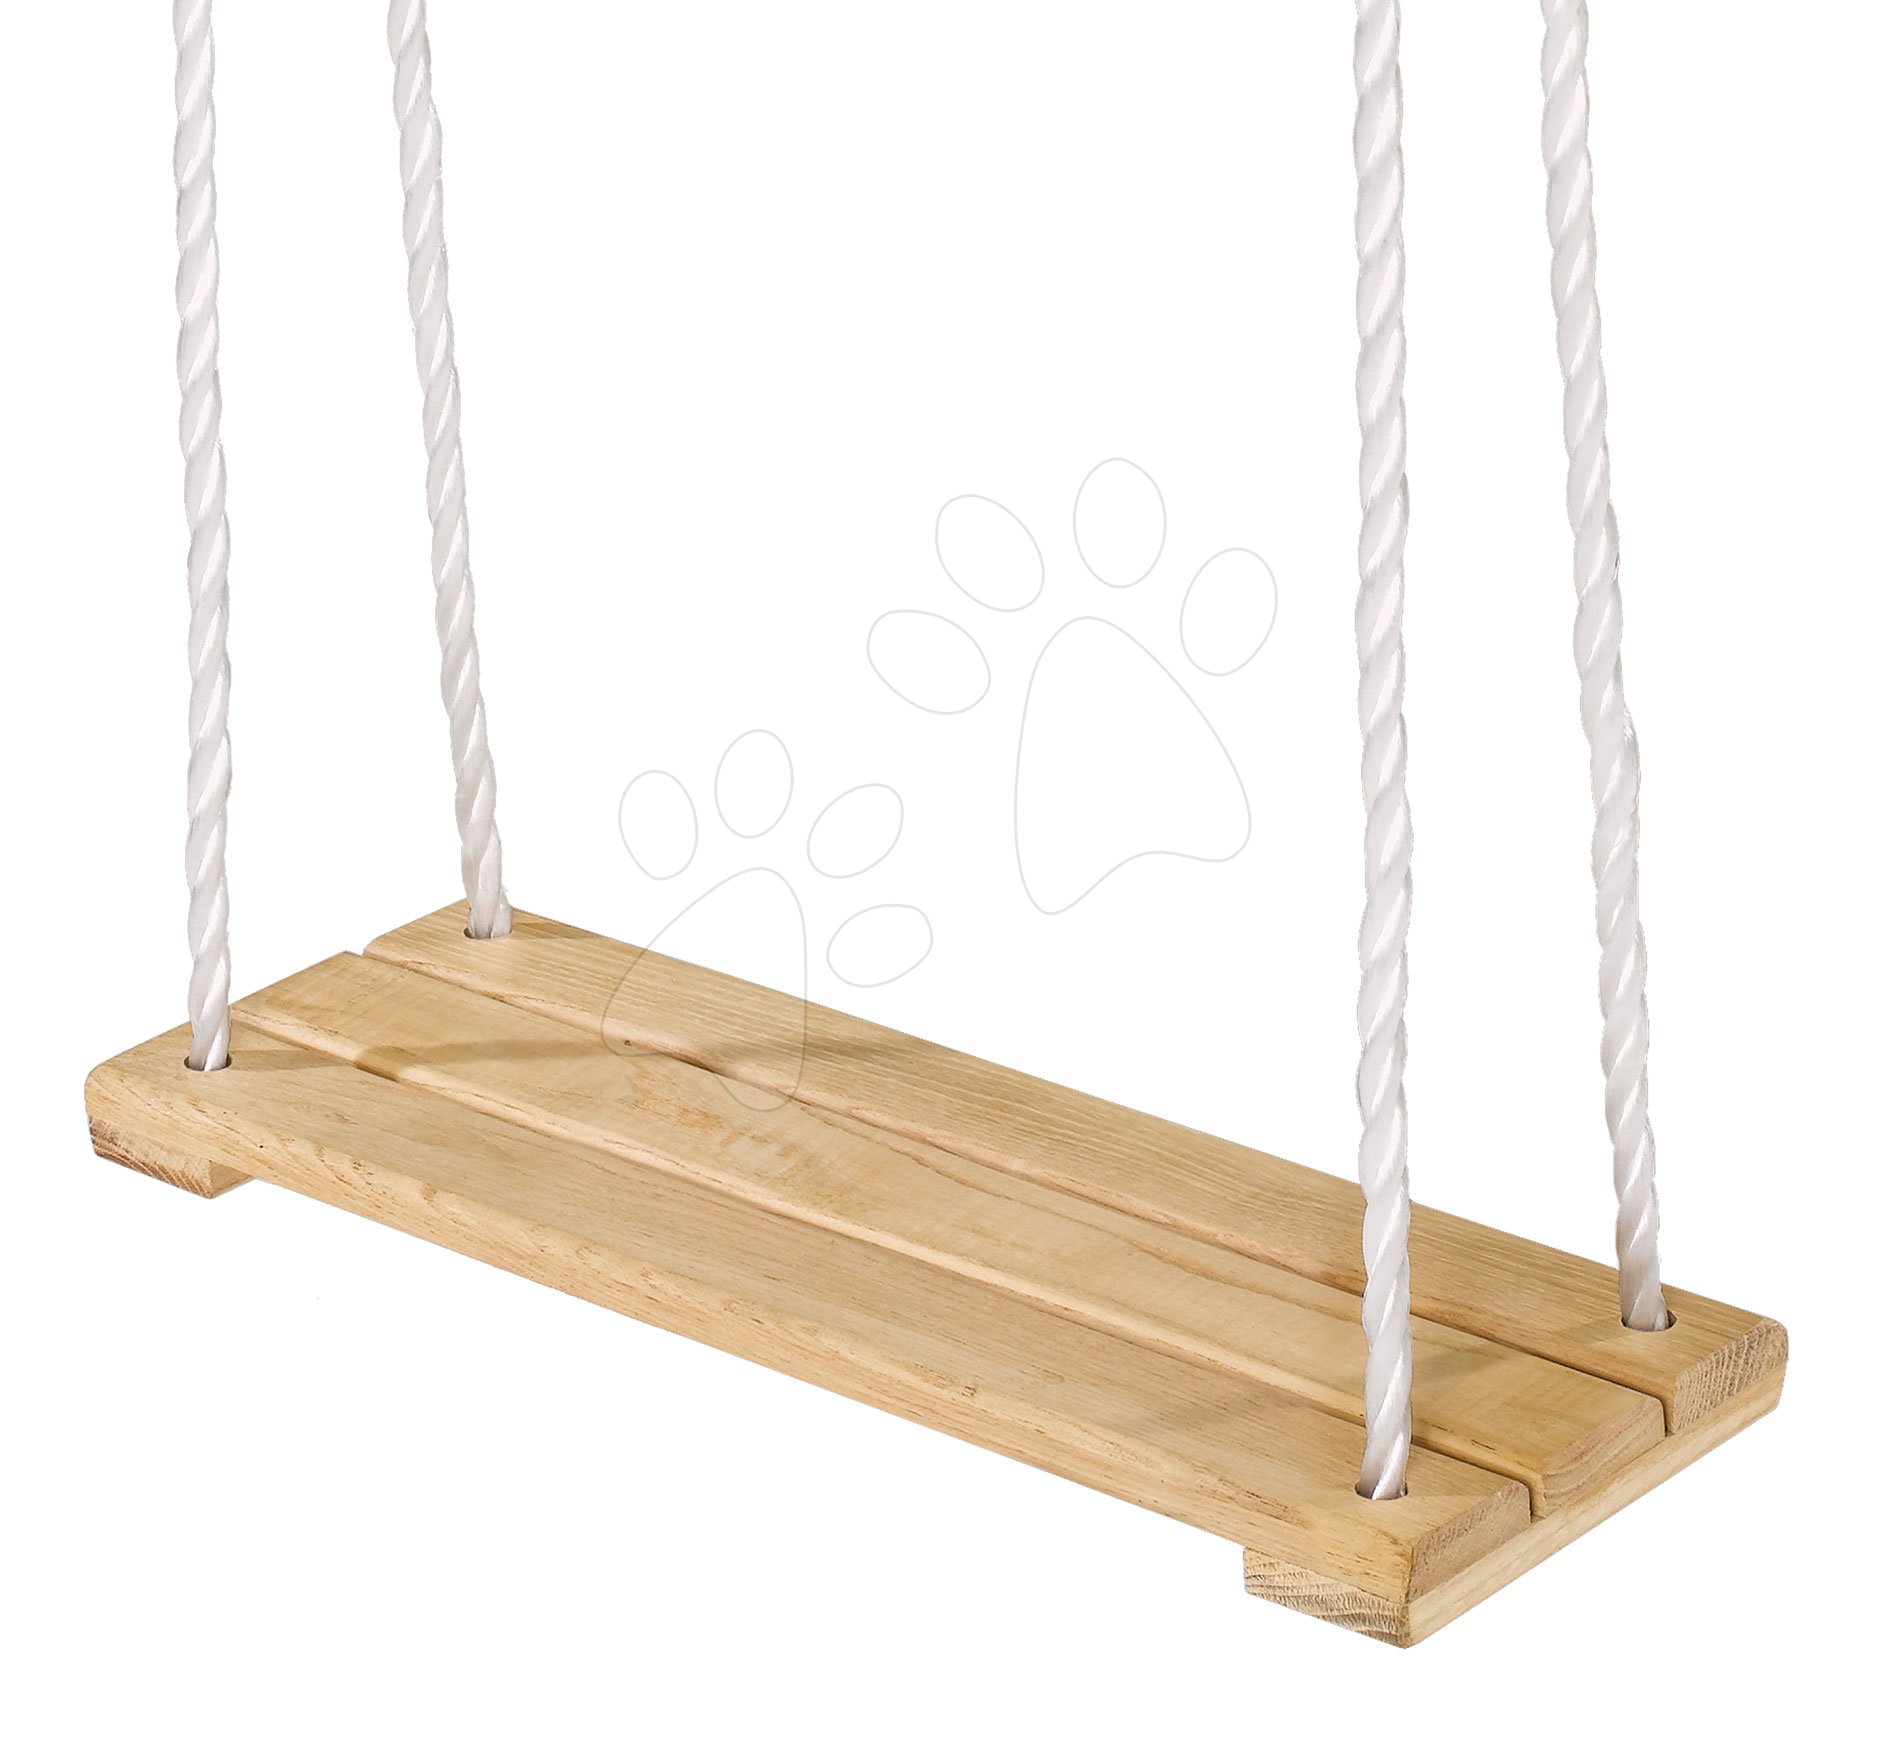 Hojdačky - Drevená hojdačka plocha Plank Swing Outdoor Eichhorn prírodná 140-210 cm dĺžka 40*14 cm a 60 kg nosnosť